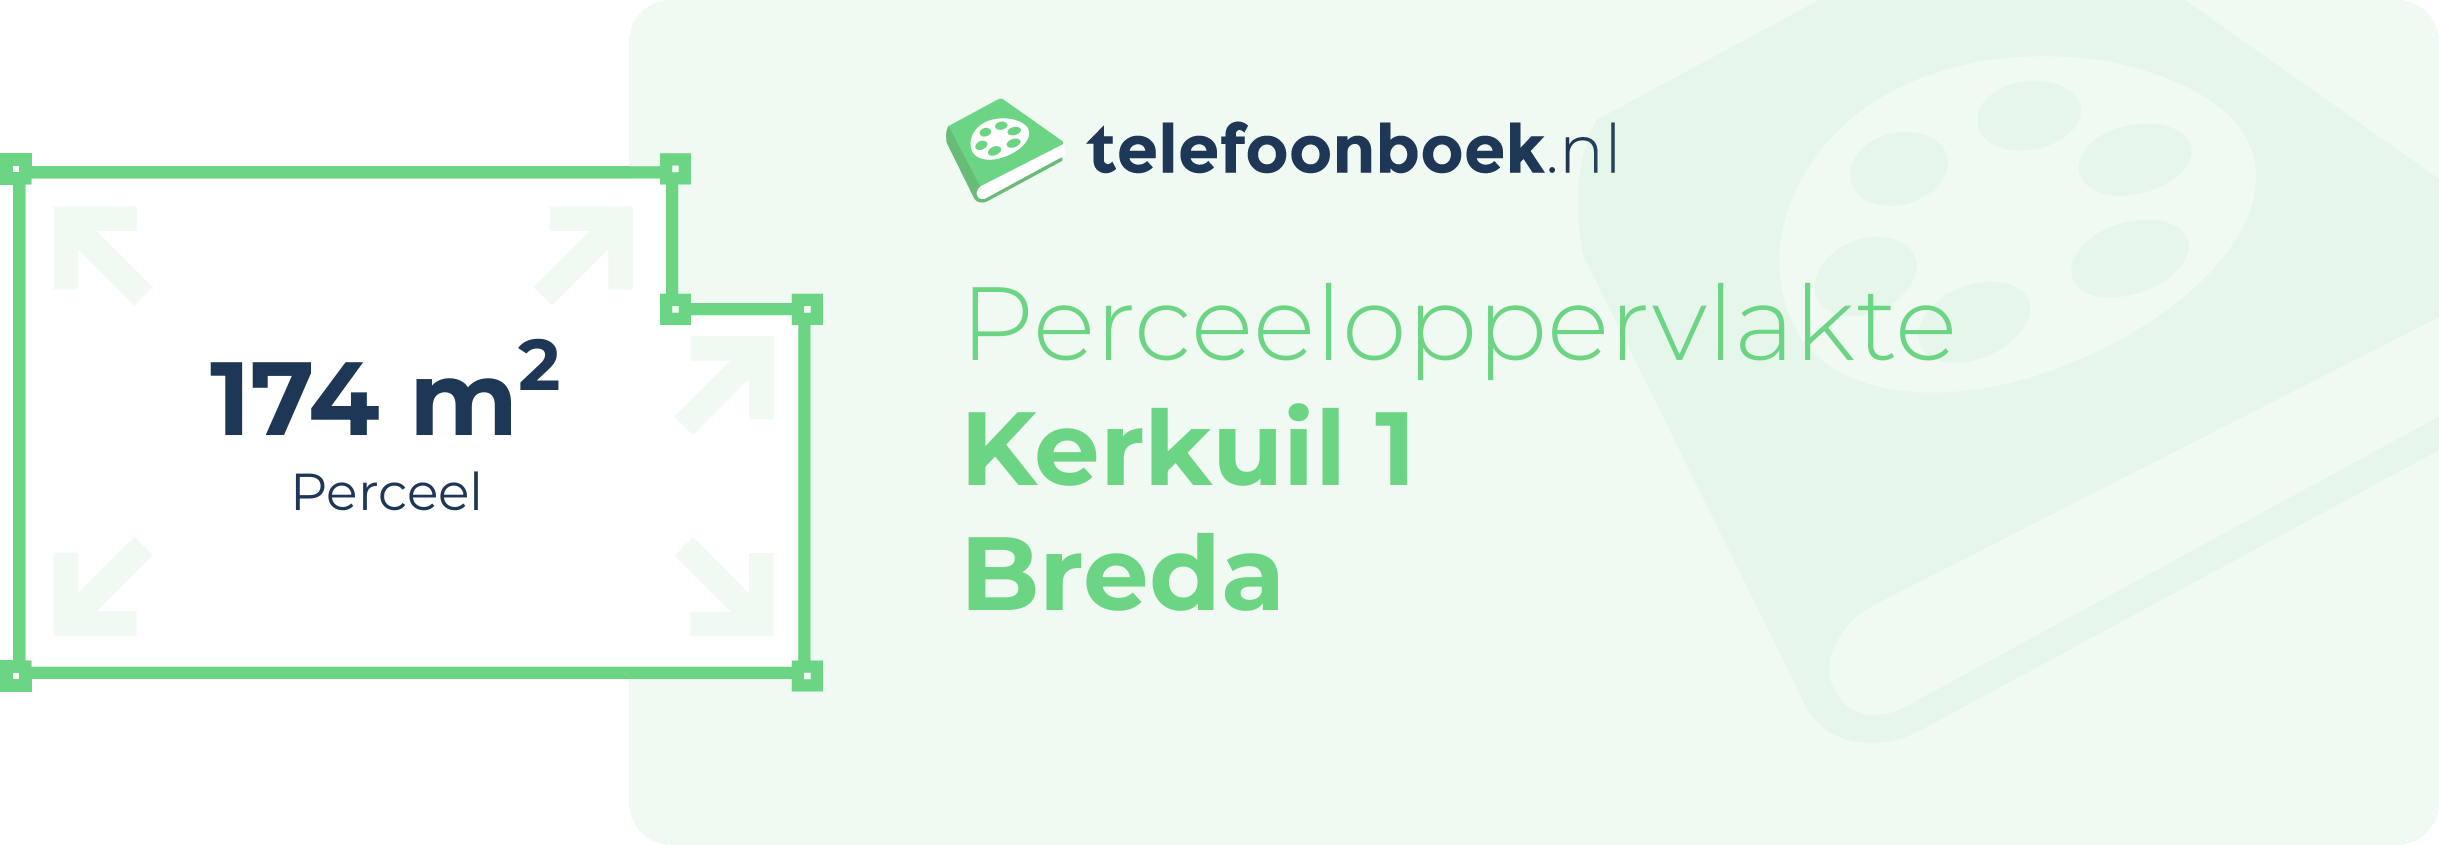 Perceeloppervlakte Kerkuil 1 Breda